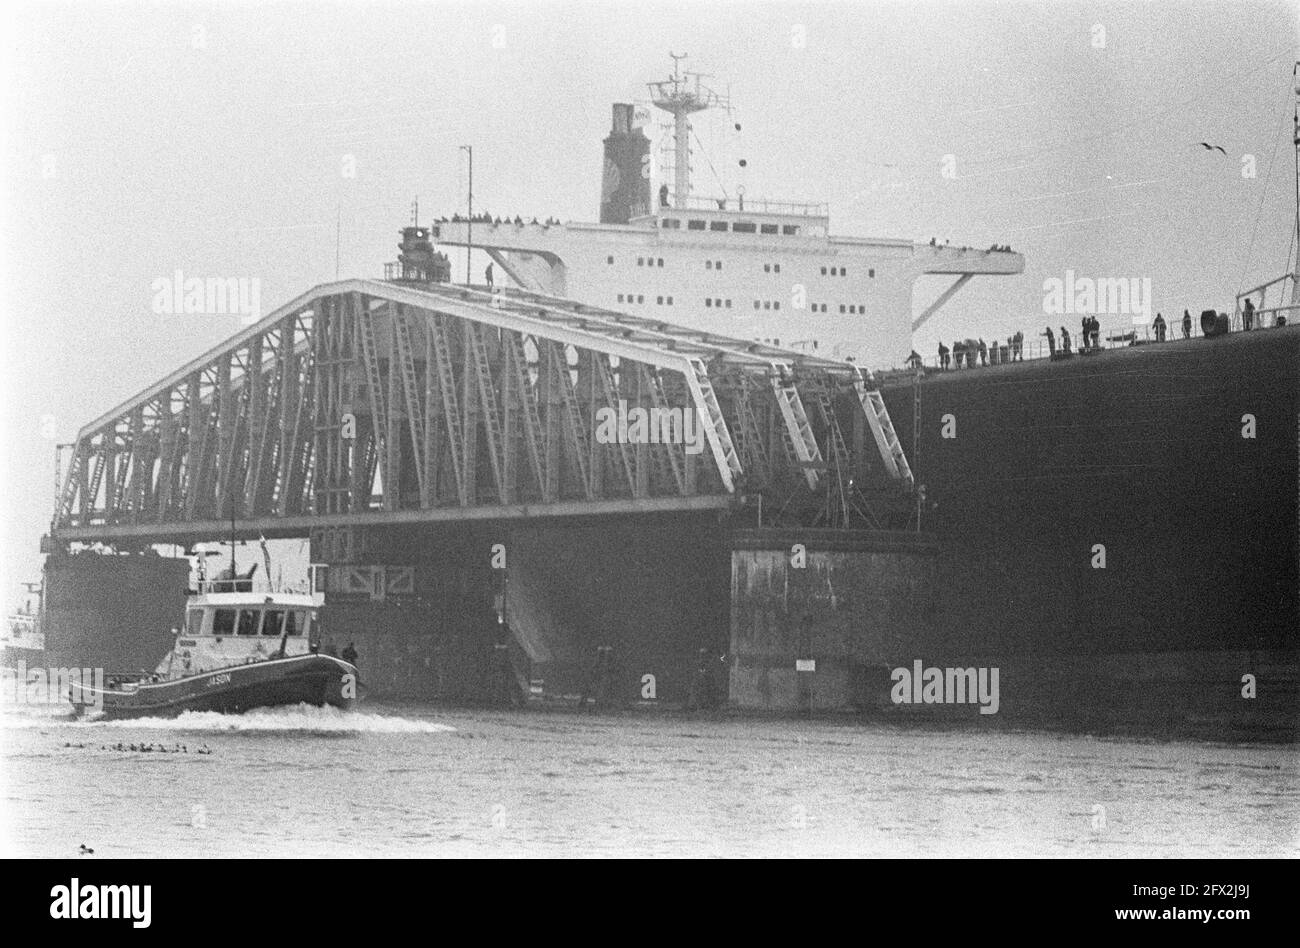 si Deportes análisis Mammoth tanker Melania hace la carrera de prueba (aquí en Hembrug), 8 de  diciembre de 1968, Mammoth tanqueros, las carreras de prueba, Países Bajos,  agencia de prensa del siglo 20th foto, noticias